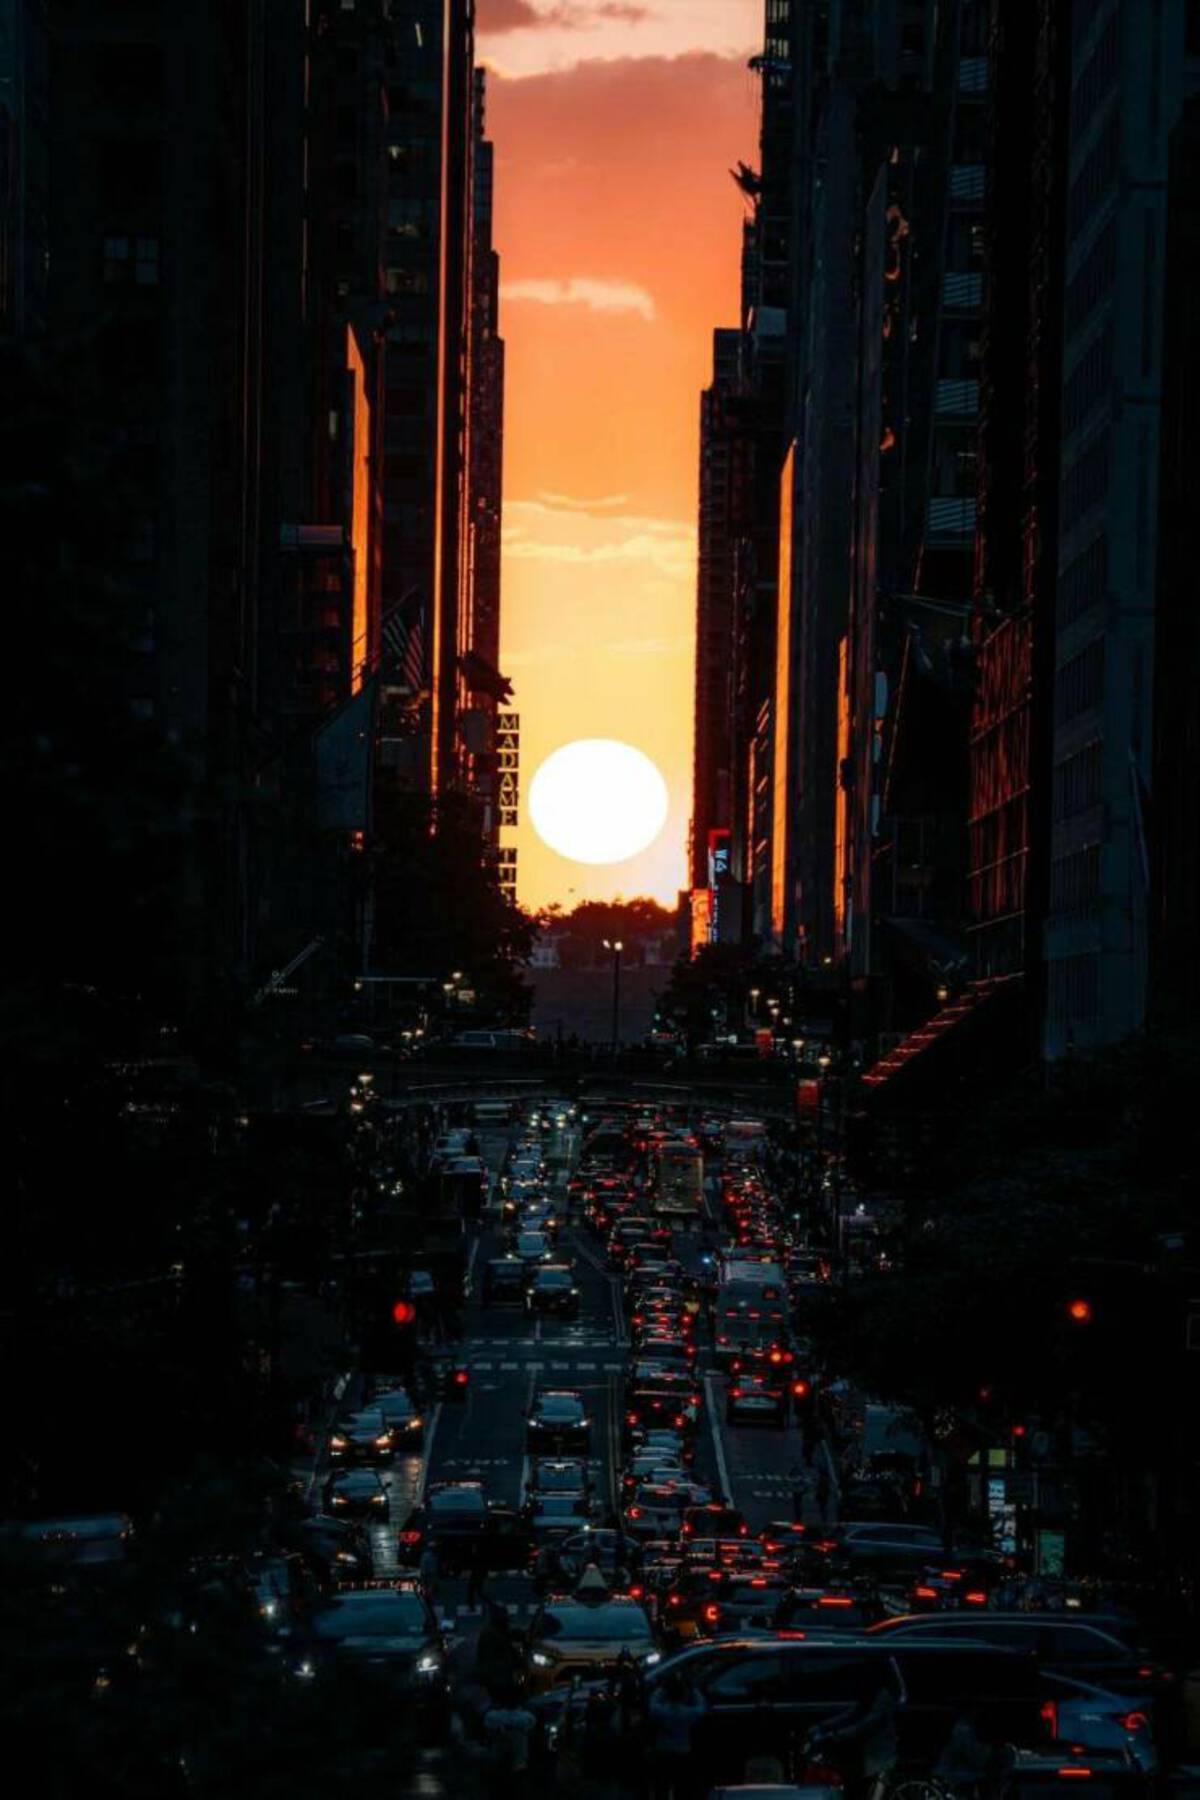 sunset - Fe